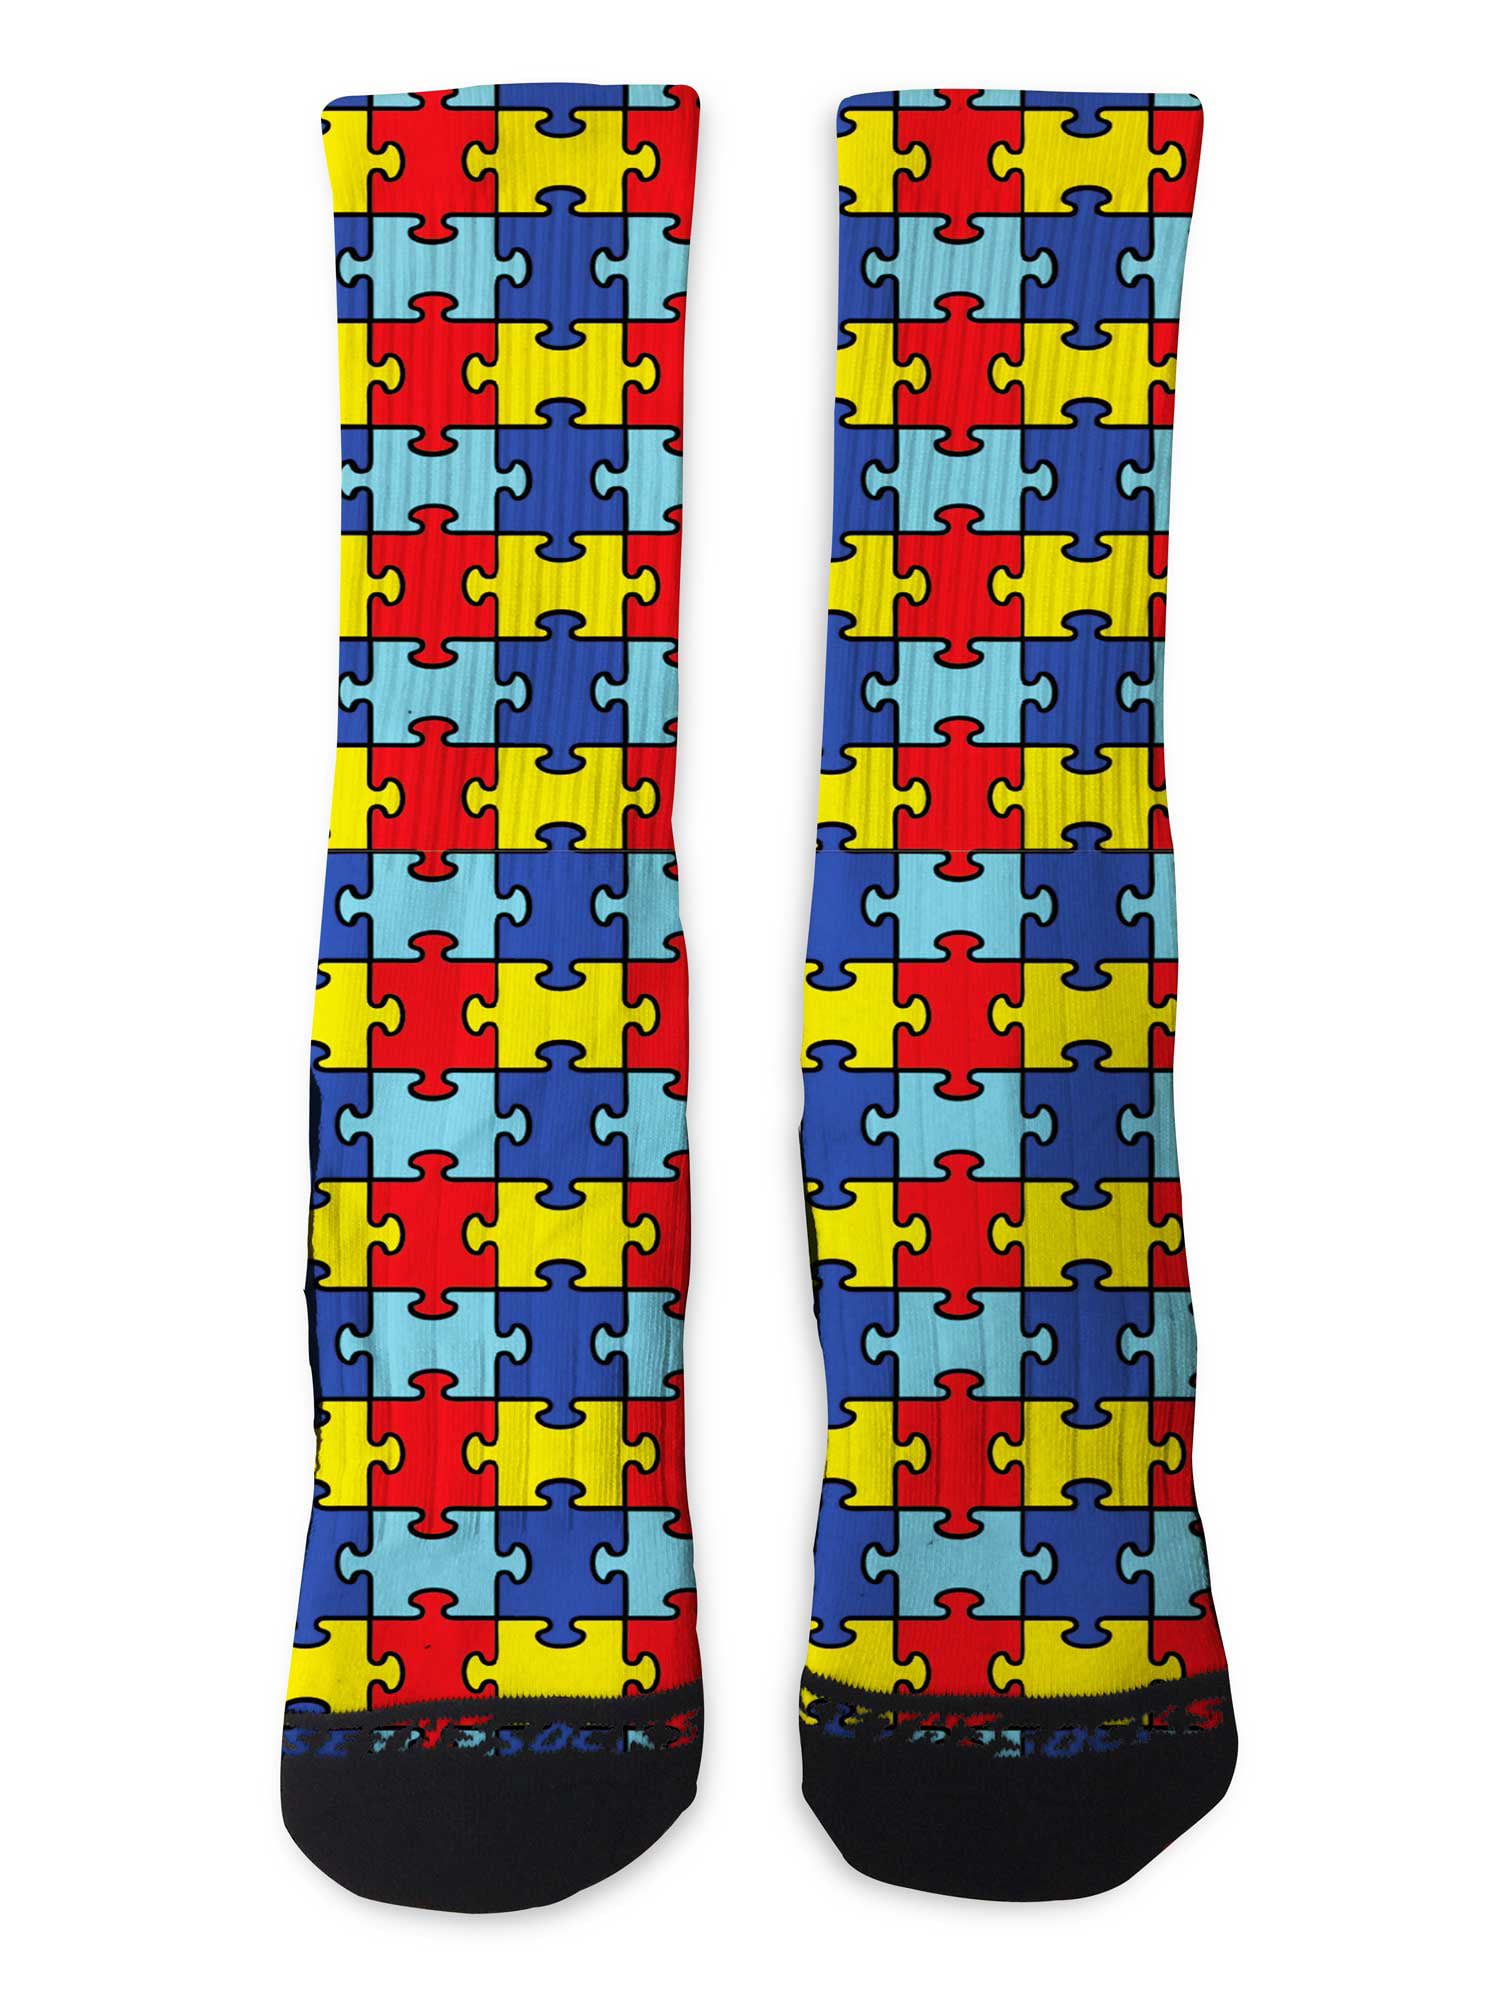 Seths Socks Custom Autism Awareness Athletic Crew Socks Large - Walmart.com